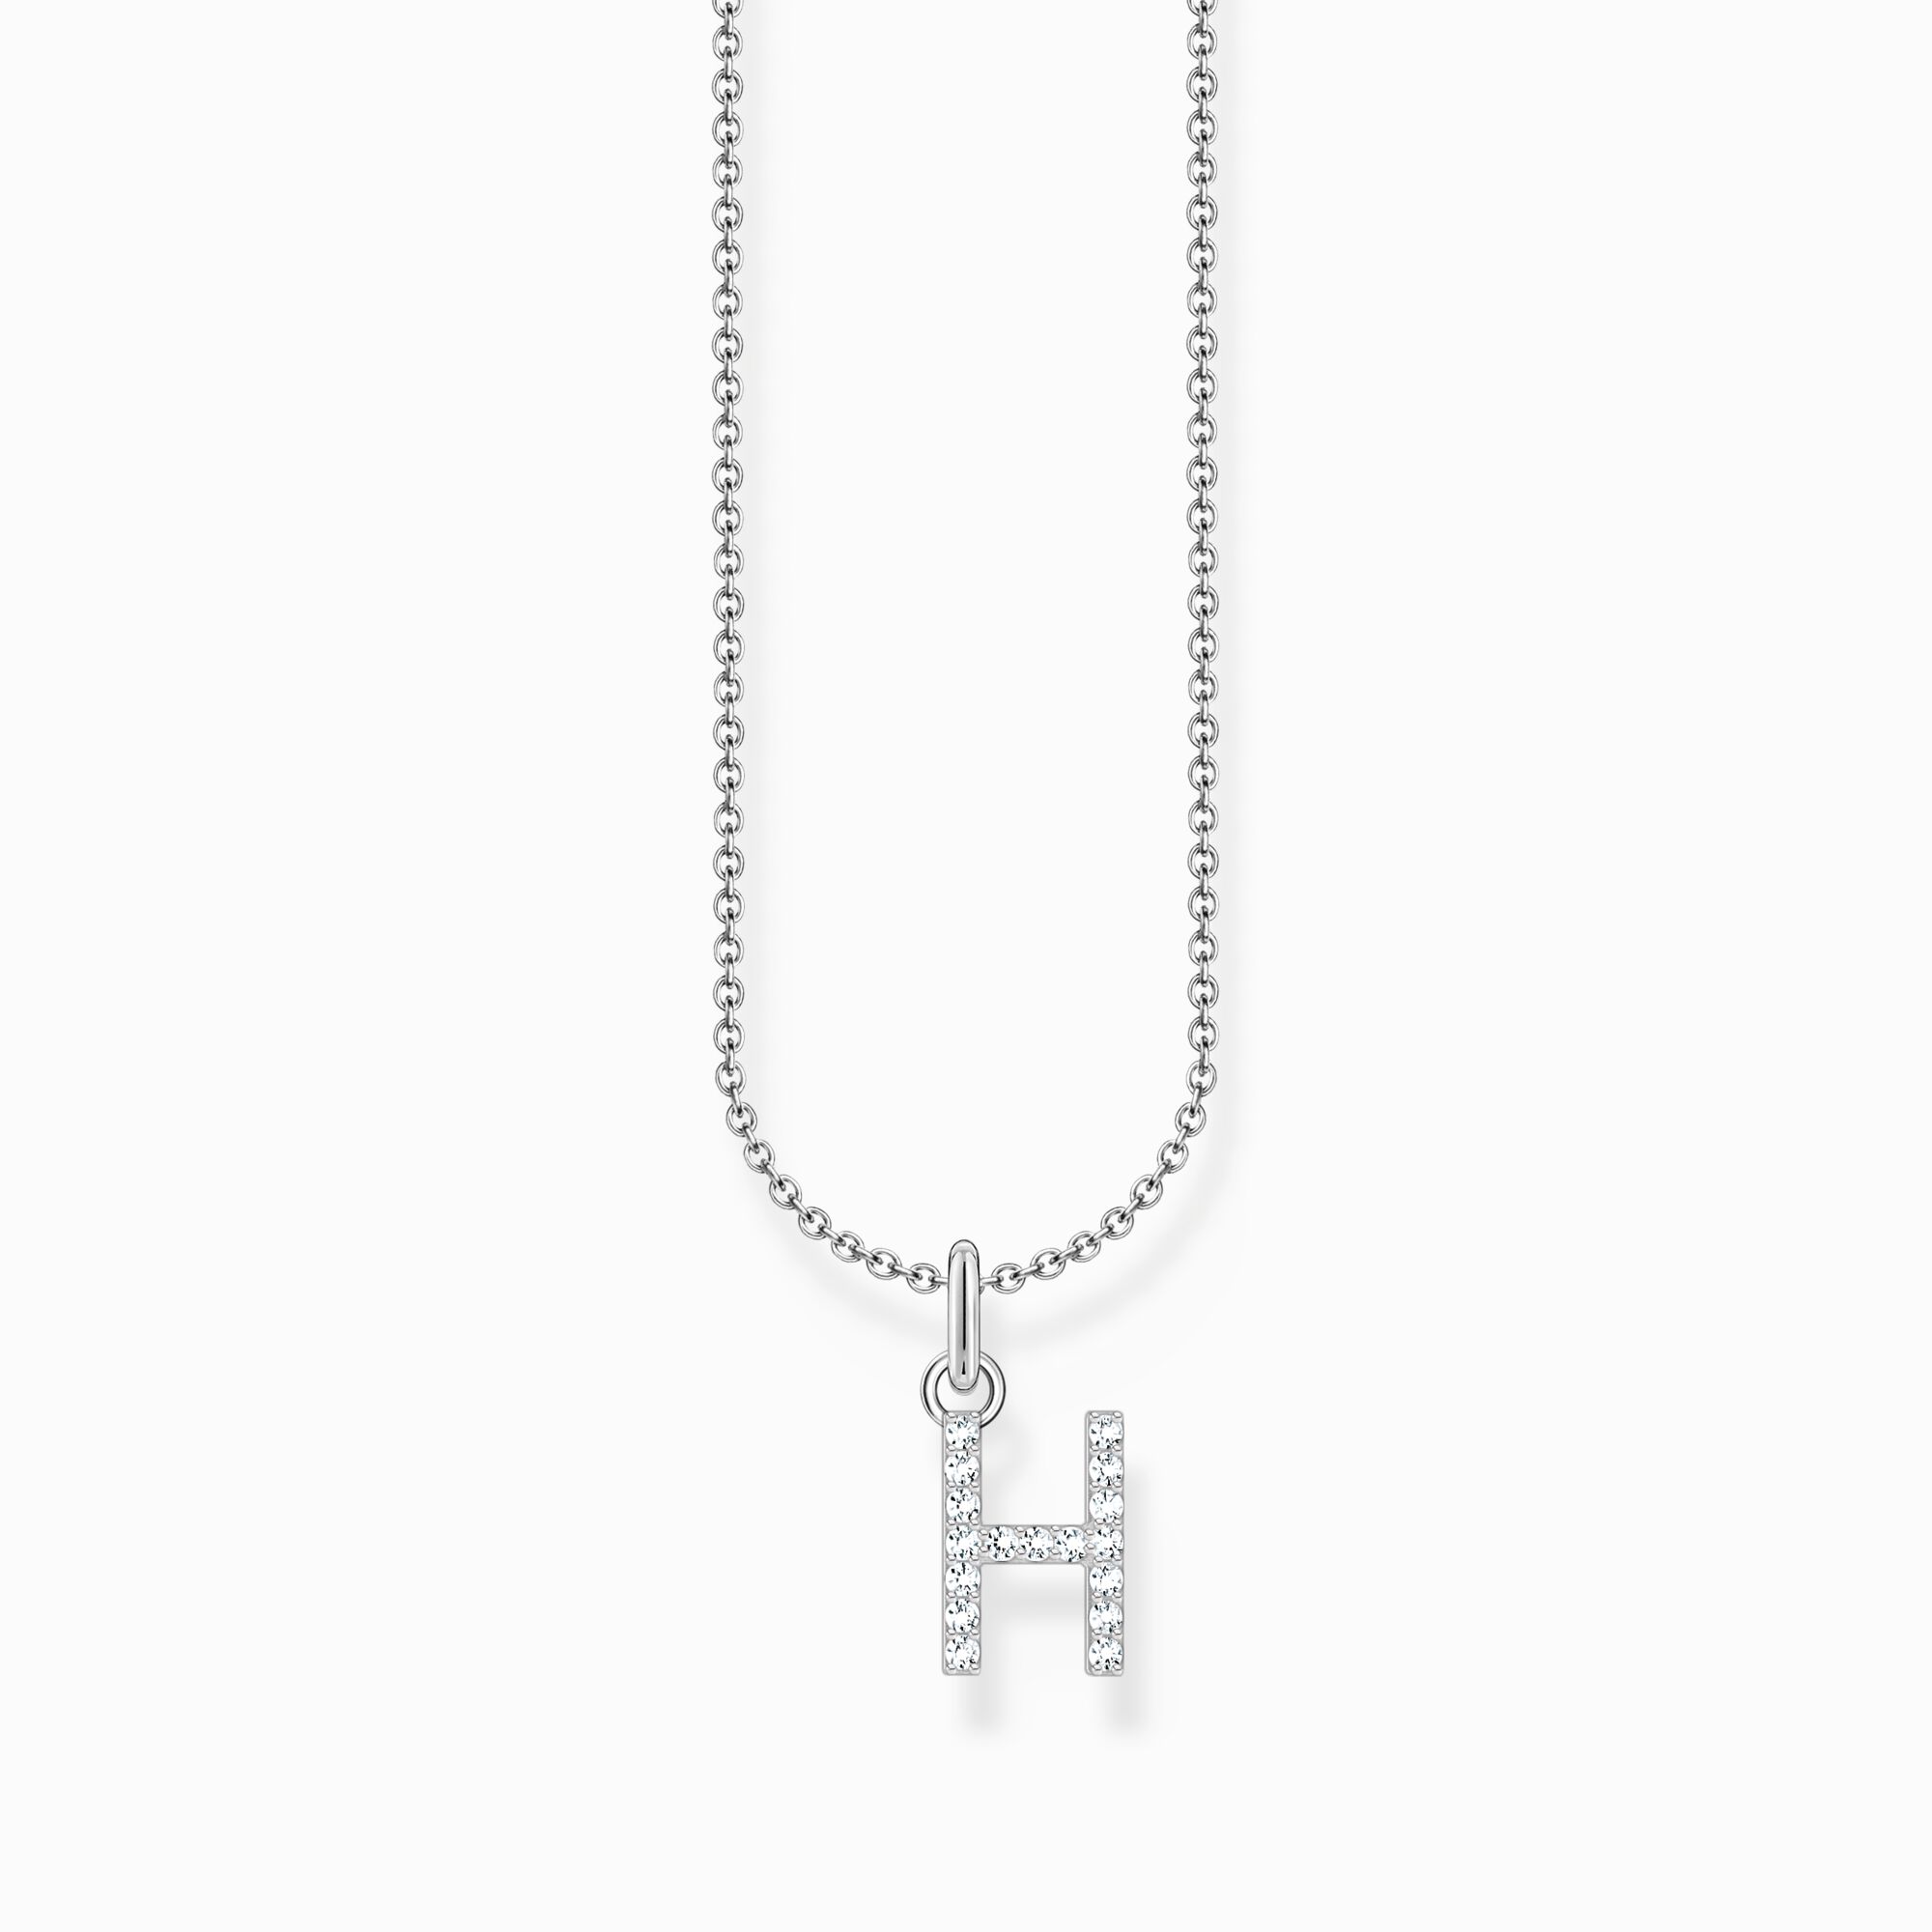 Halsband med bokstaven H, silver ur kollektionen Charming Collection i THOMAS SABO:s onlineshop